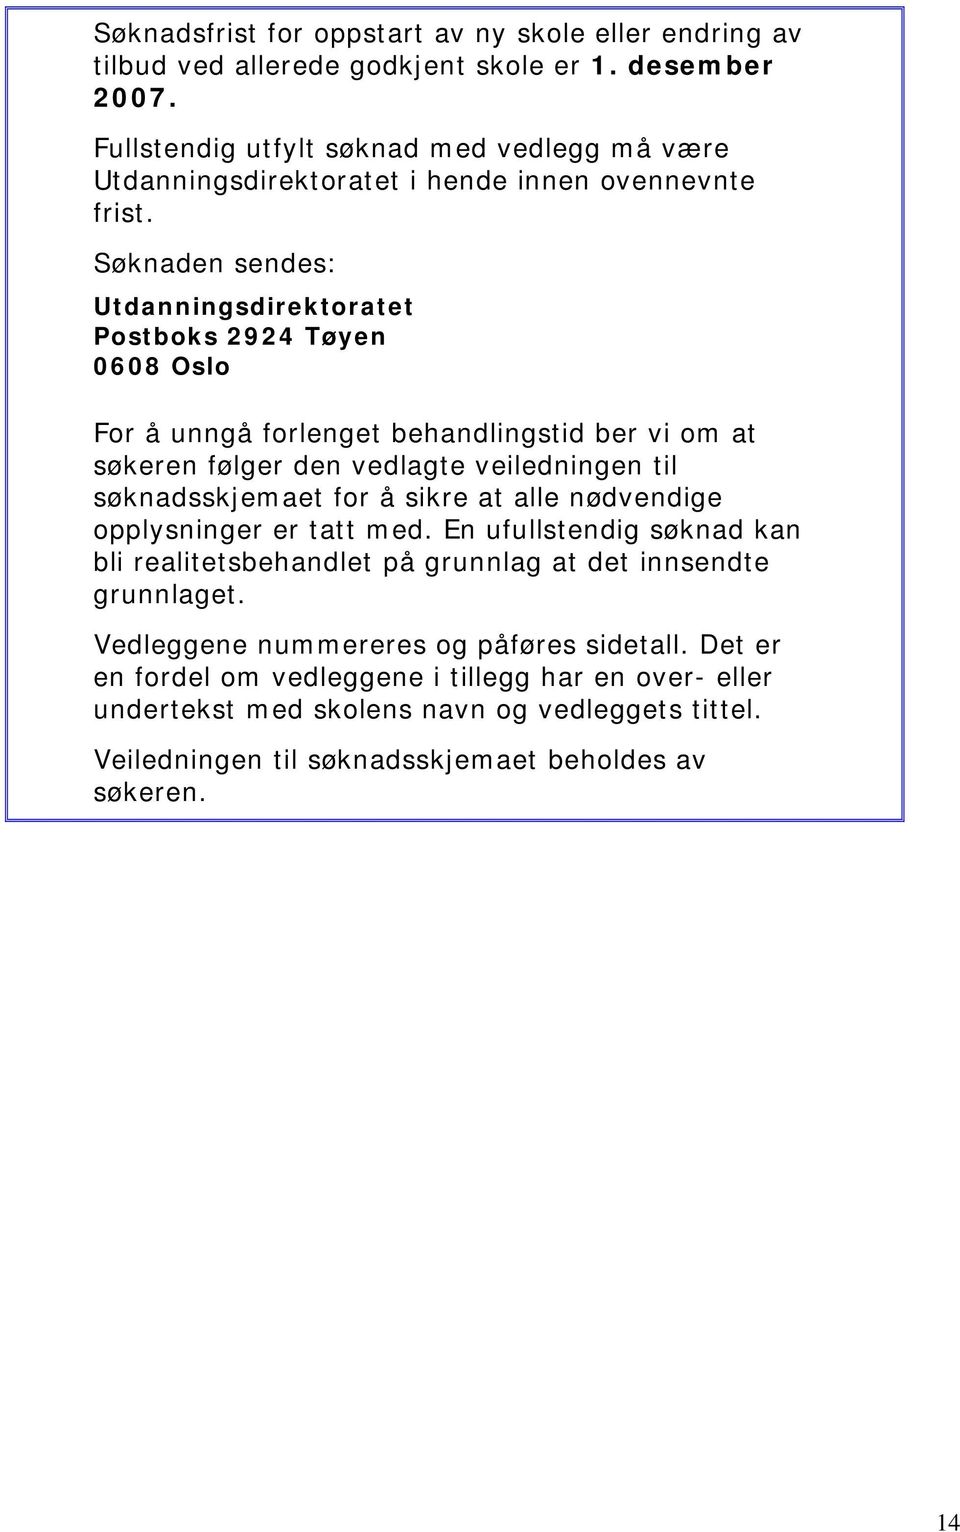 Søknaden sendes: Utdanningsdirektoratet Postboks 2924 Tøyen 0608 Oslo For å unngå forlenget behandlingstid ber vi om at søkeren følger den vedlagte veiledningen til søknadsskjemaet for å